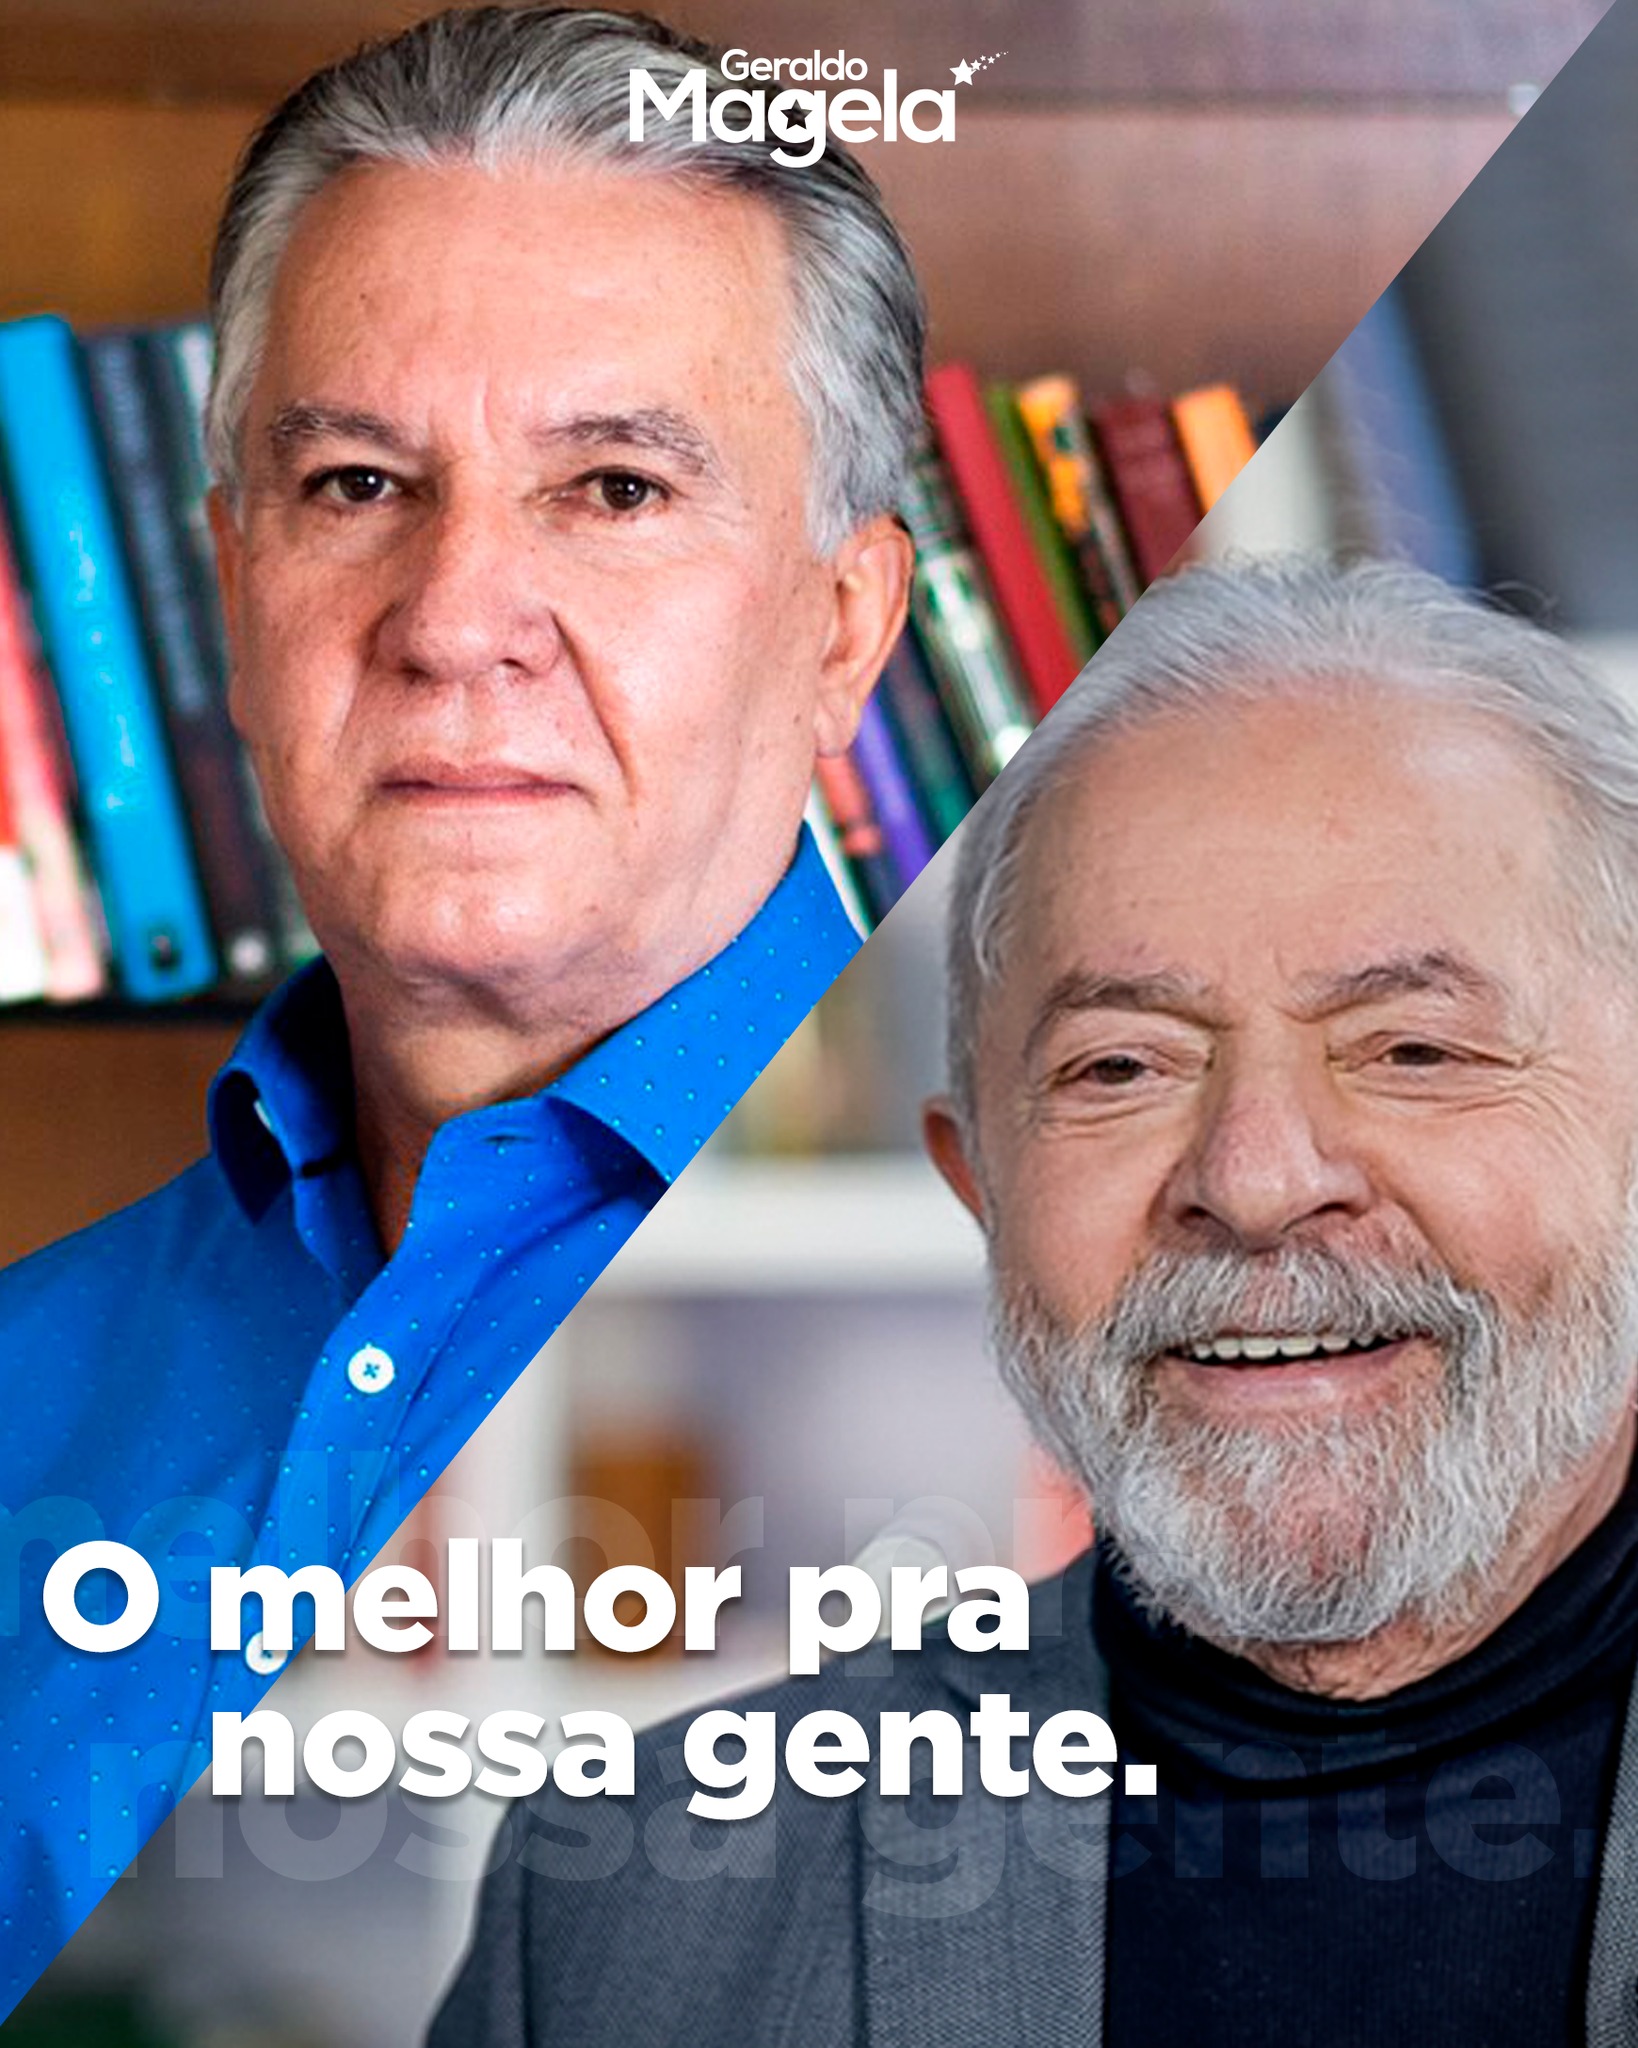 Apesar de todas as dificuldades dos ltimos anos, o povo brasileiro no desiste nunca. E ns vamos nos unir a #Lula para trazer de volta a esperana ao pas e ao DF.  Juntos, podemos ir em busca do crescimento, da igualdade e da justia para todos. 